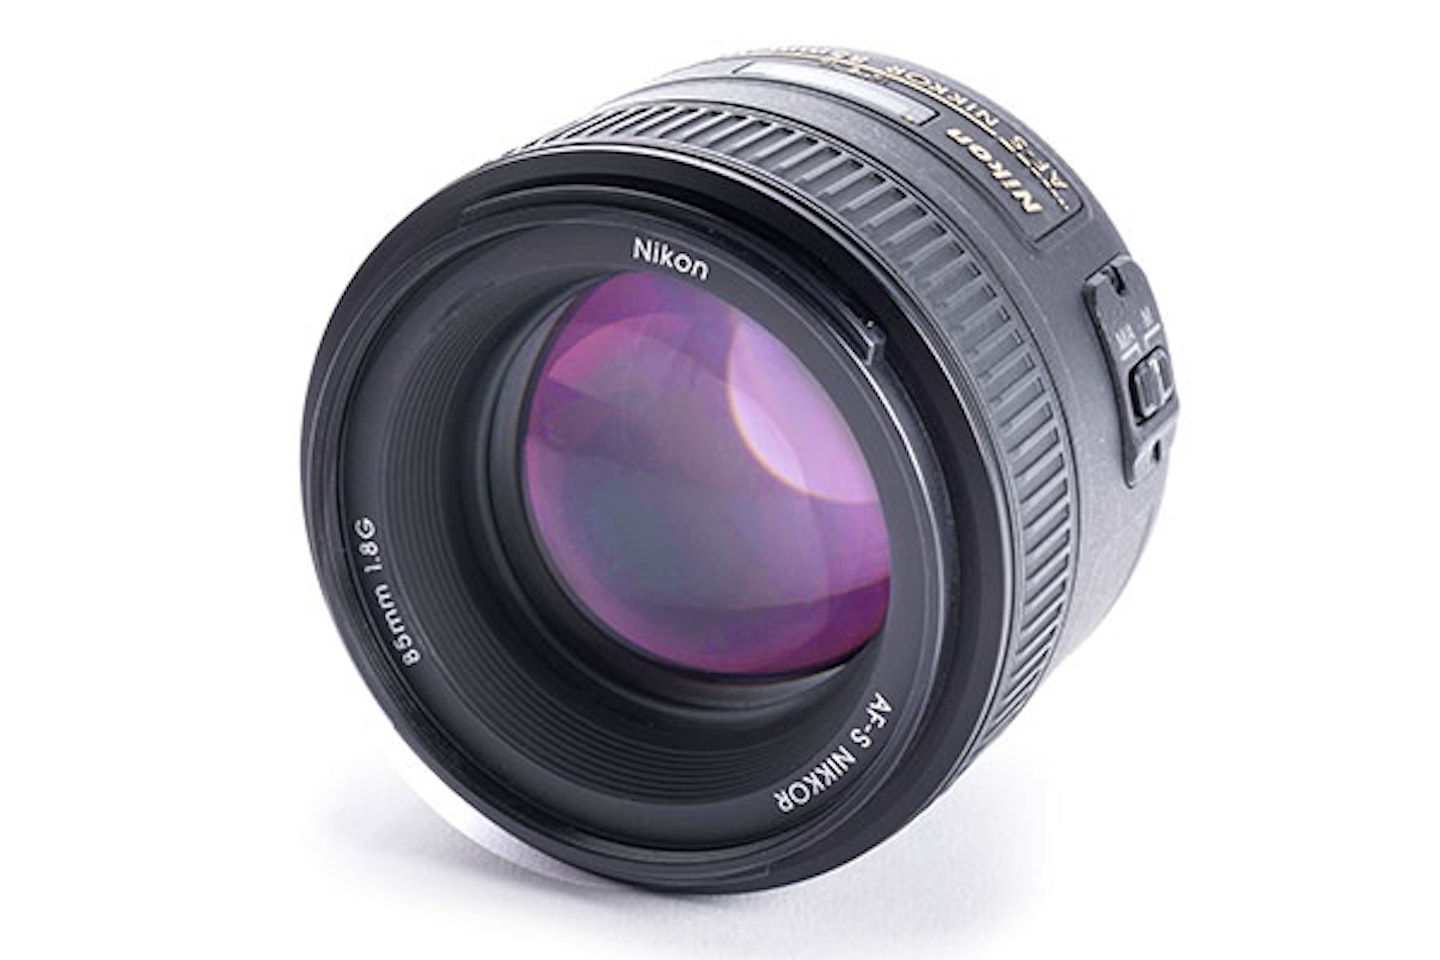 Nikon AF-S Nikkor 85mm F/1.8G Prime Lens Review